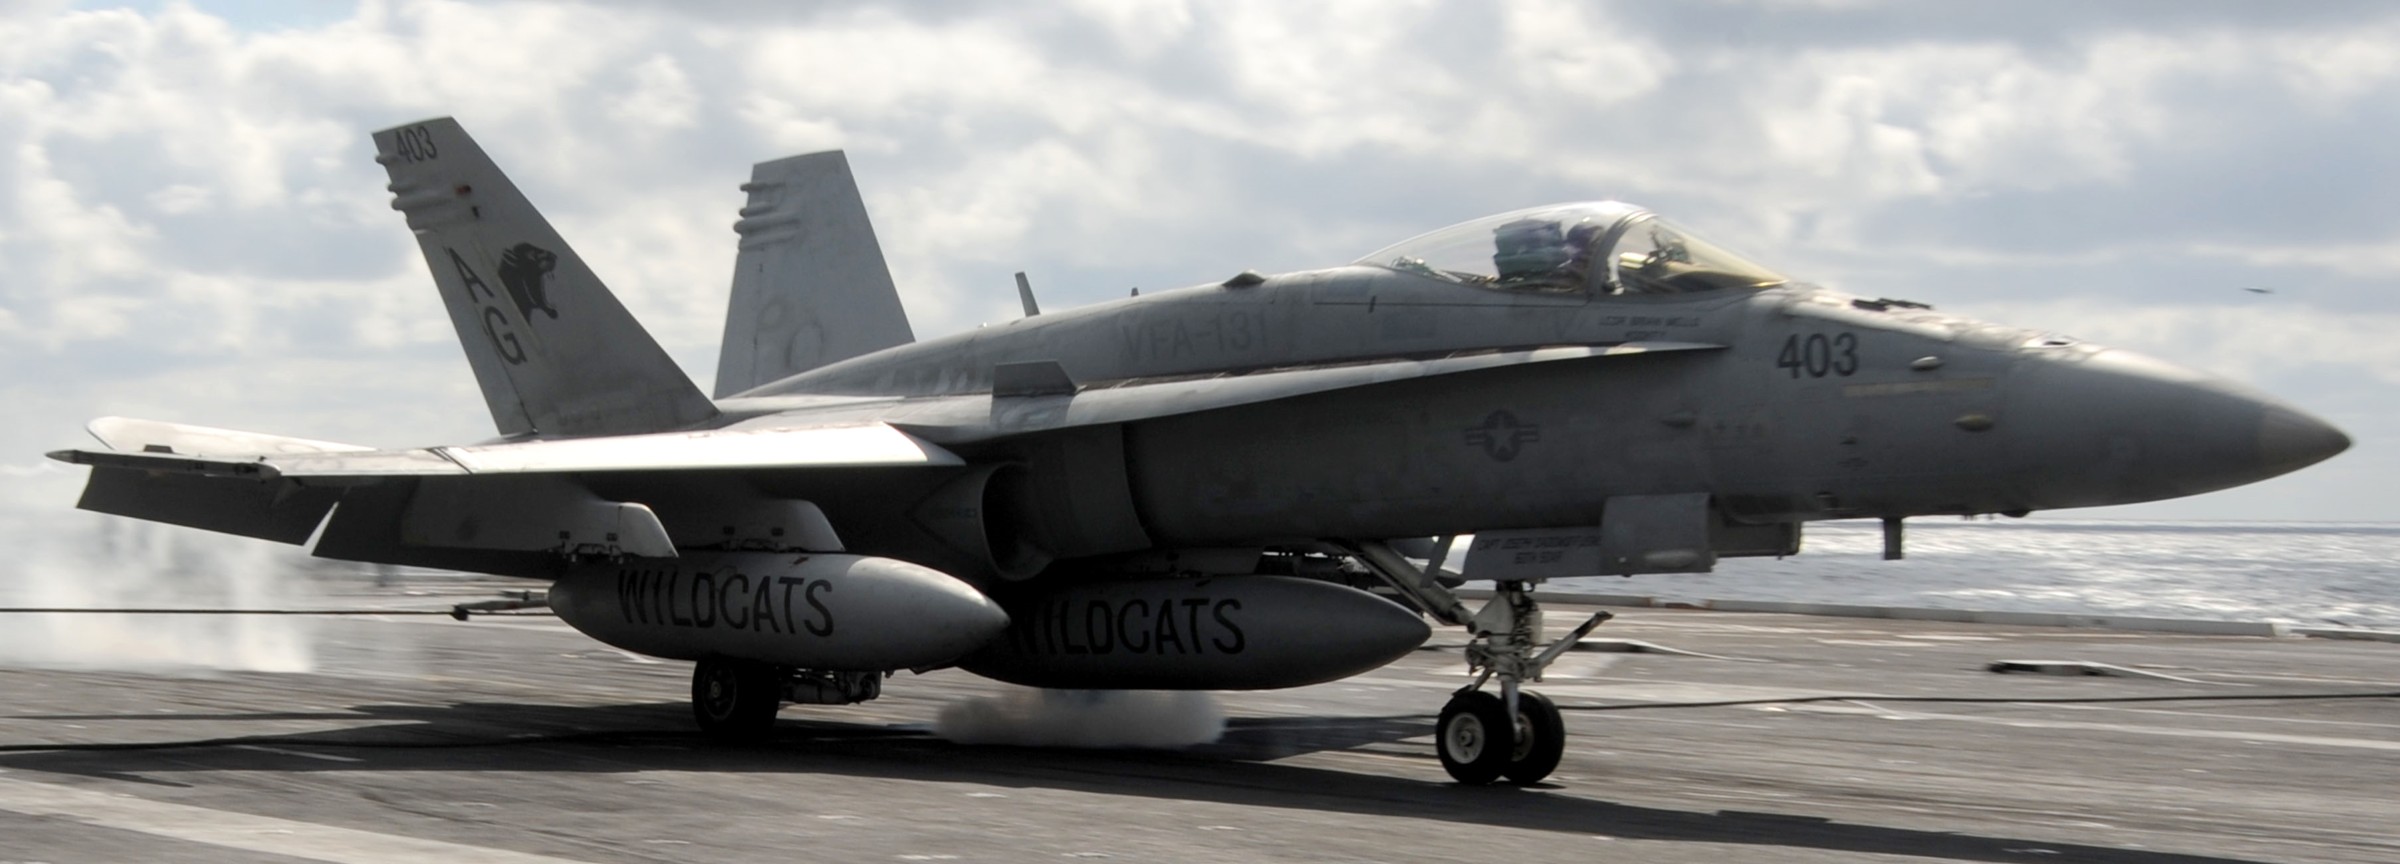 vfa-131 wildcats strike fighter squadron f/a-18c hornet cvw-7 uss dwight d. eisenhower cvn-69 2013 61